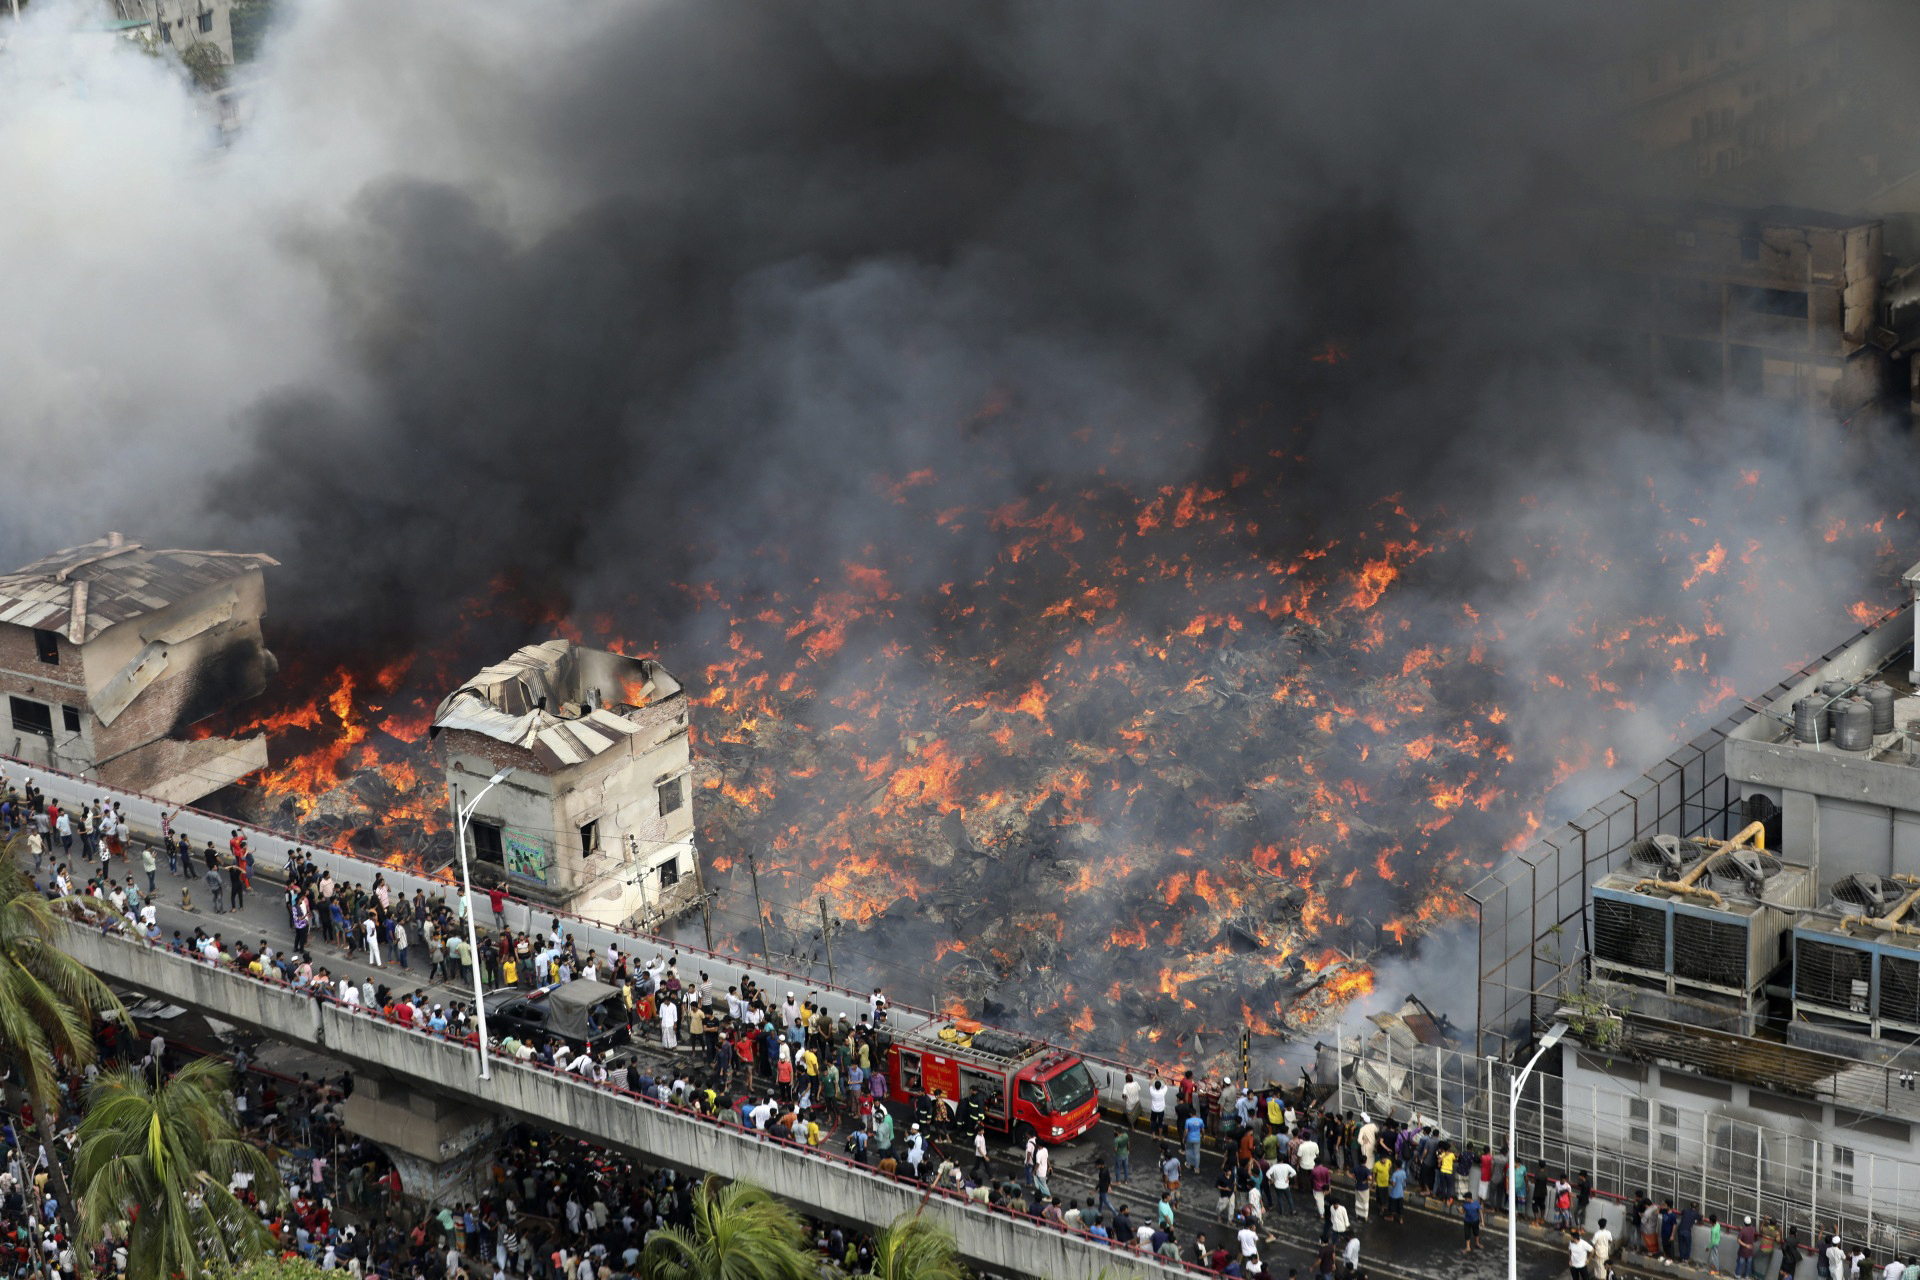 Imágenes del devastador incendio en un mercado de ropa en Bangladesh 